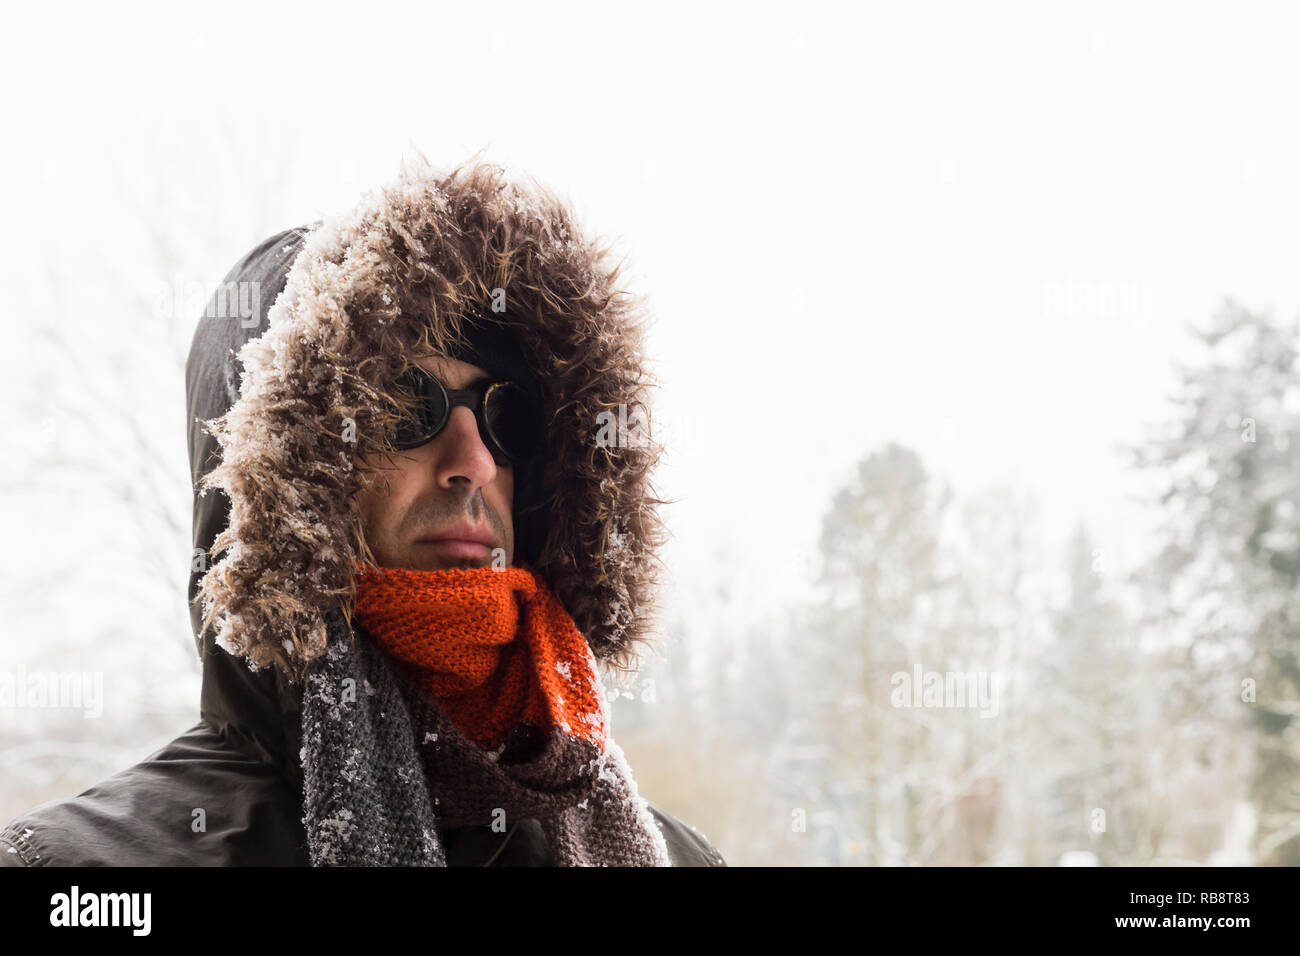 Portrait d'un homme portant un aventurier hiver chaud manteau vert avec la  fourrure capot, une casquette bleu, un foulard orange et noir lunettes  style rétro Photo Stock - Alamy